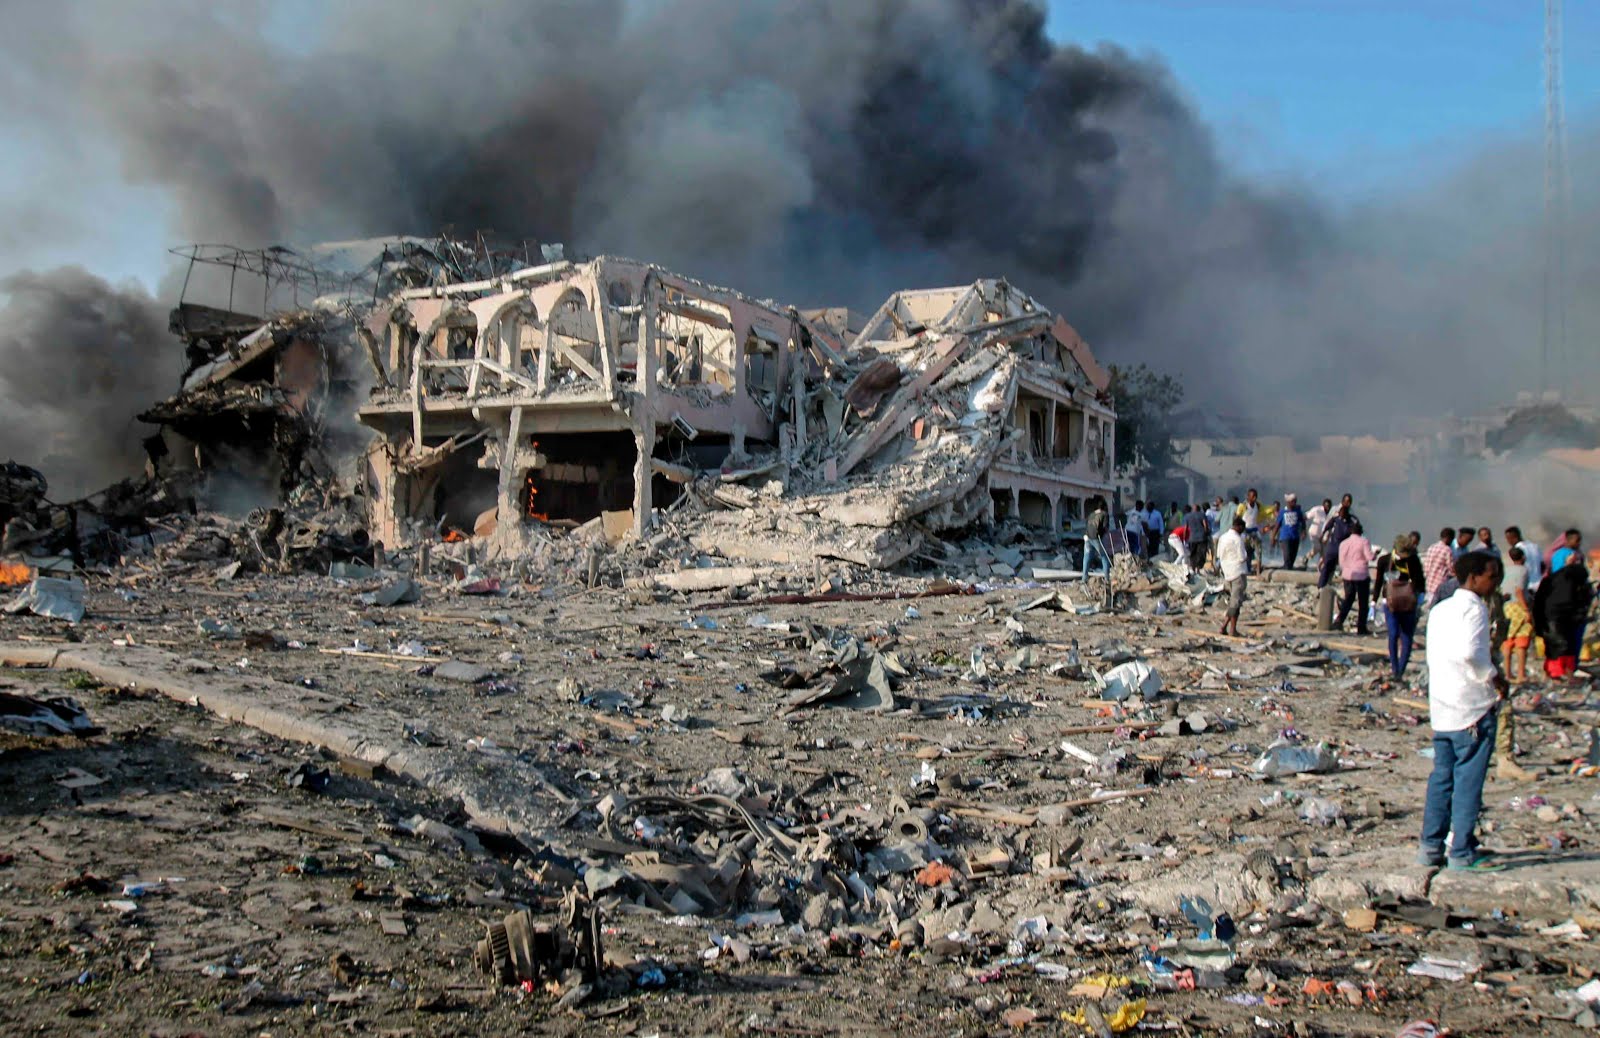 SOMALIA TERRORIST ATTACK LEAVES HUNDREDS DEAD.